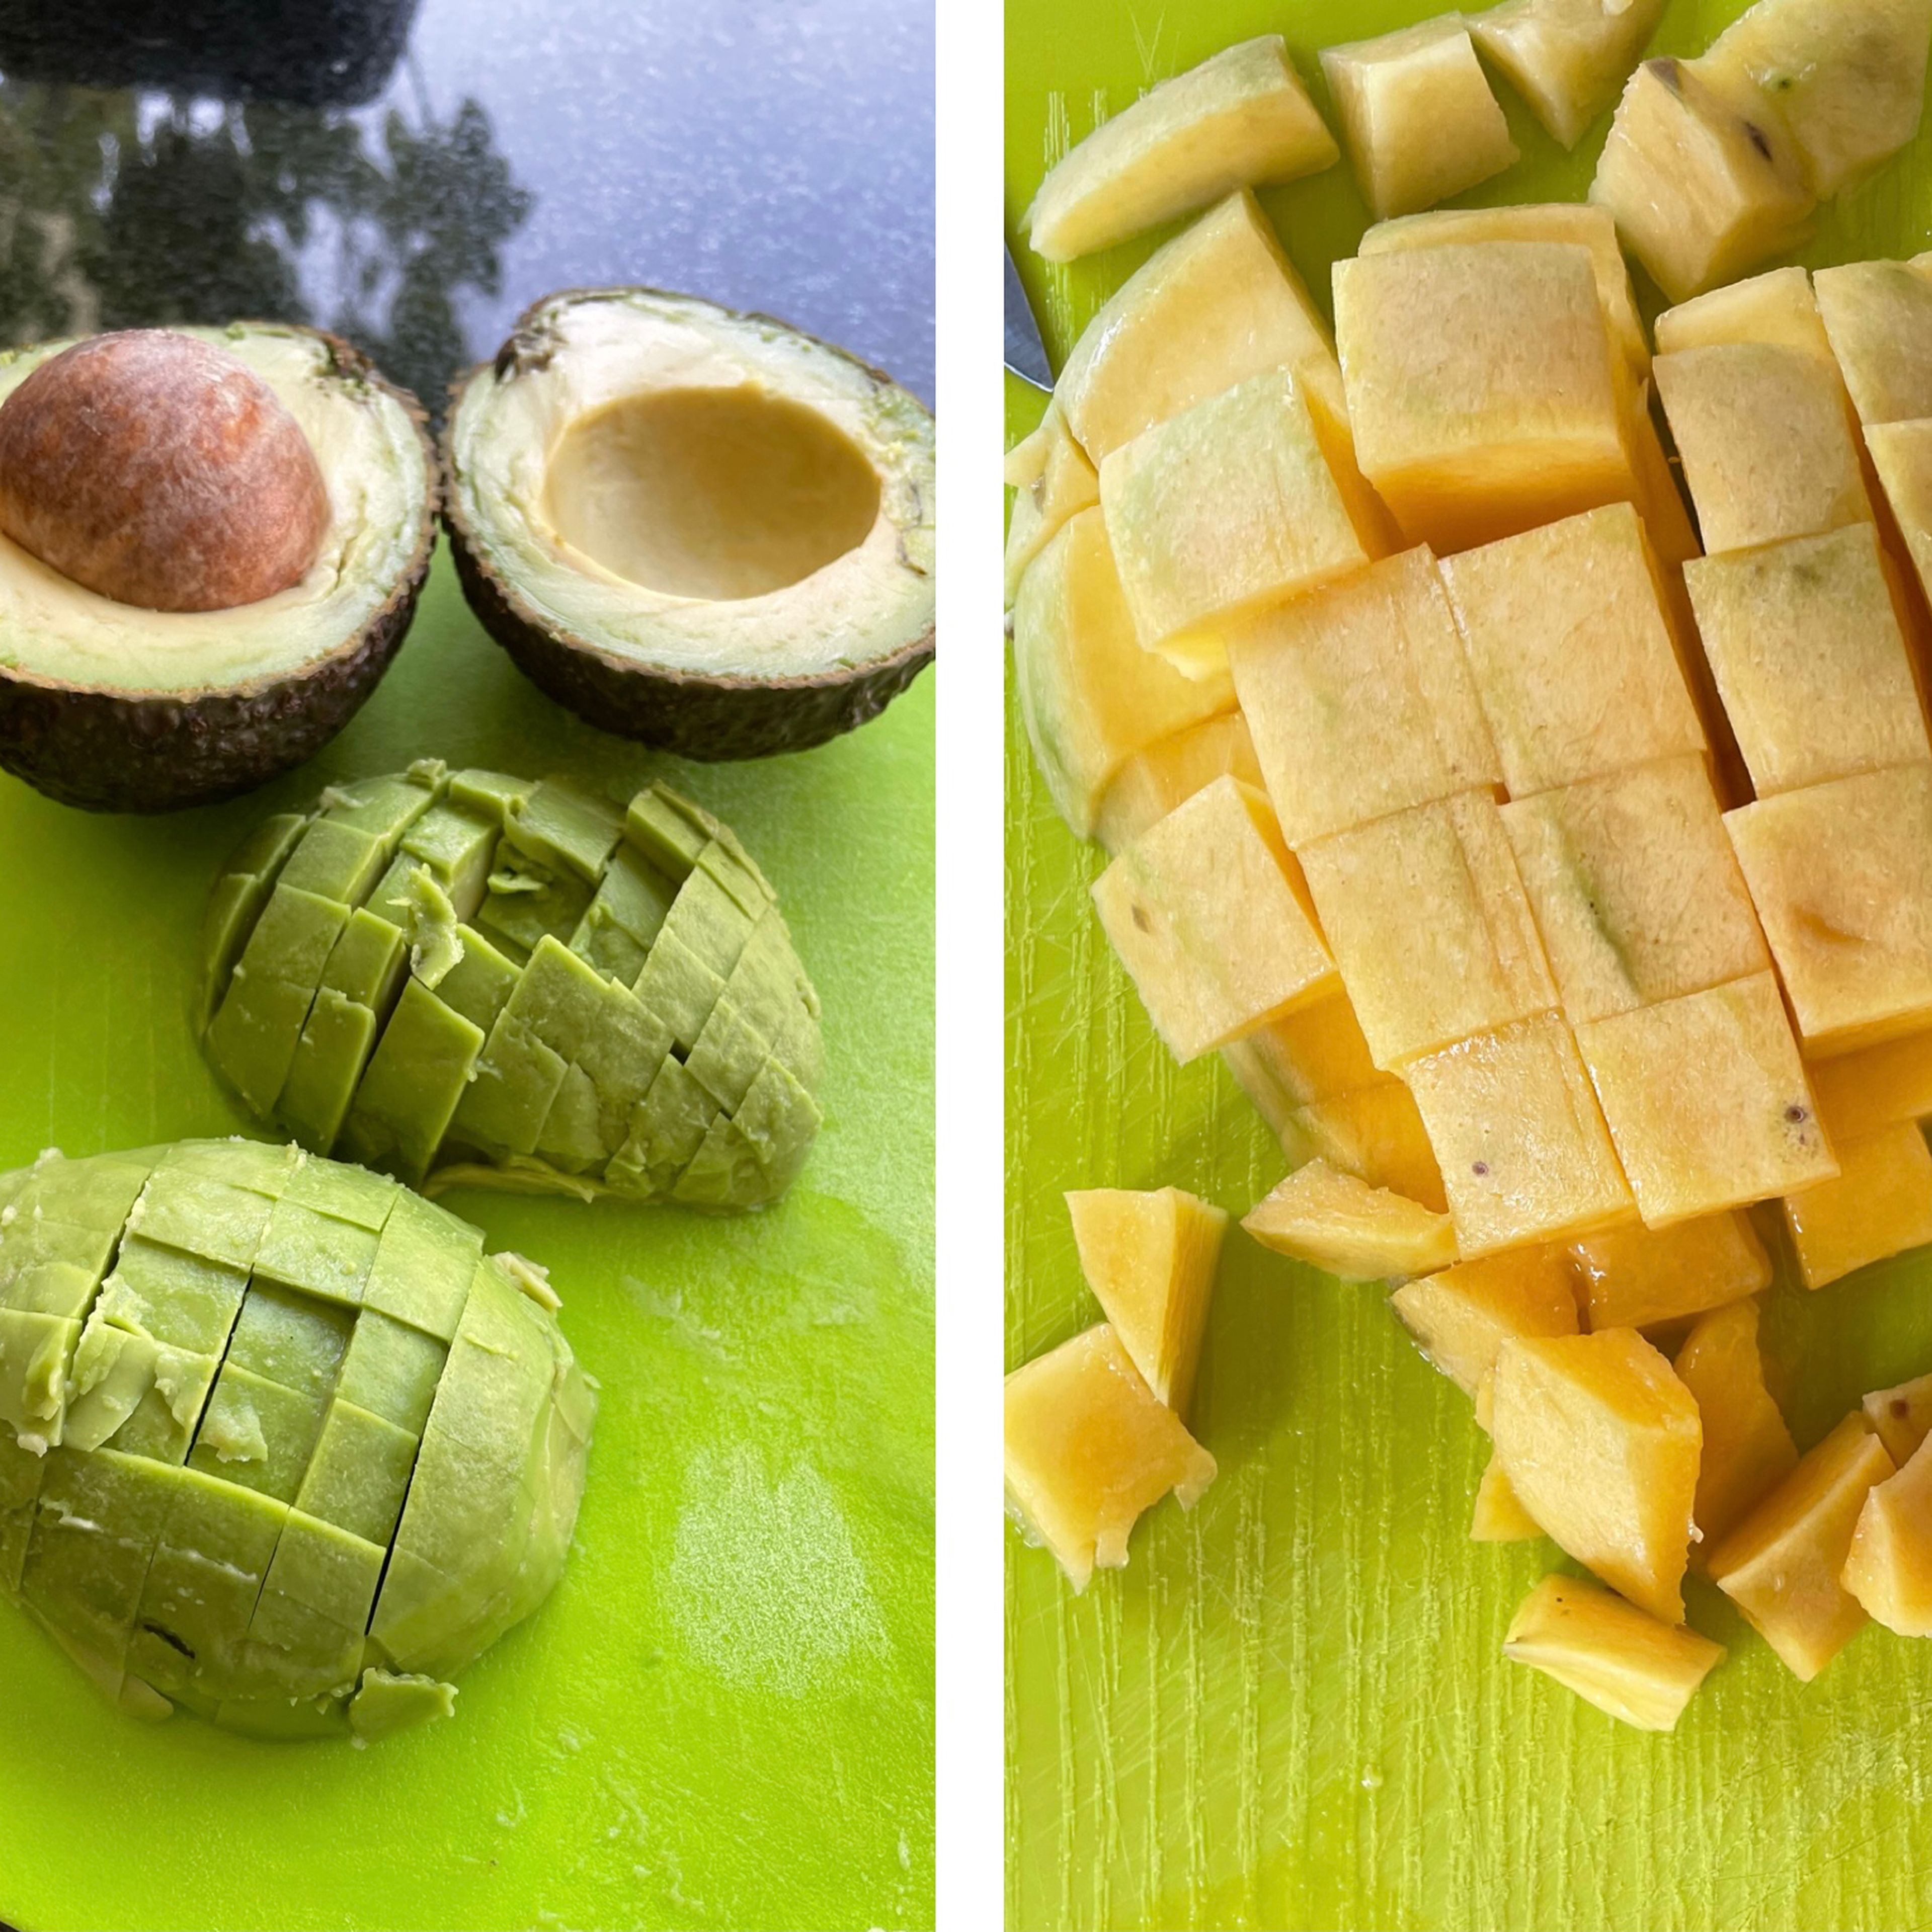 Schale der Avocados entfernen und den Kern entnehmen. Die Mangos schälen. Dann beides in mundgerechte Würfel schneiden.